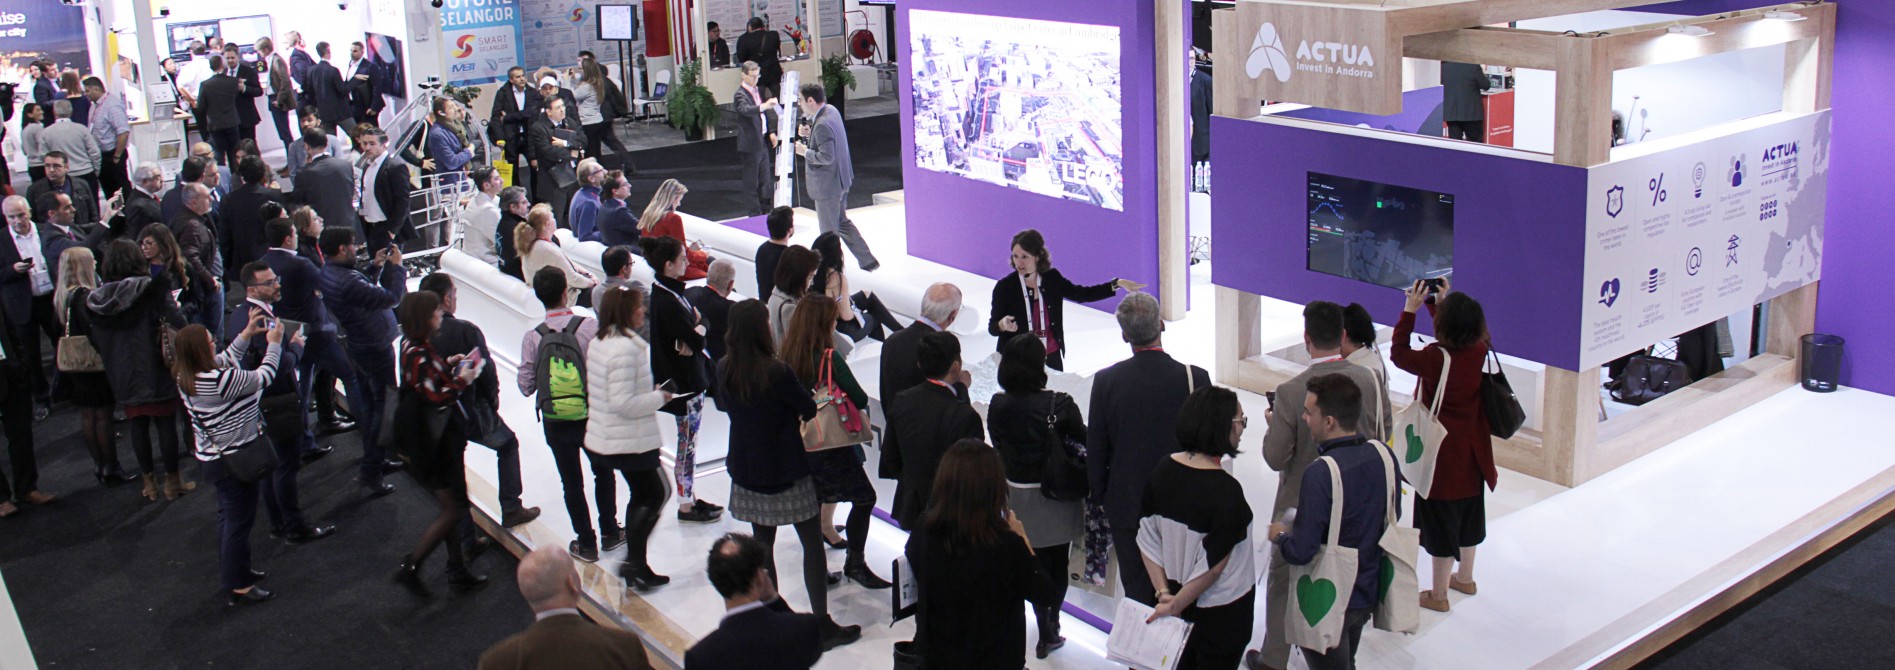 Los proyectos andorranos acaparan la atención internacional en el Smart City Expo World Congress